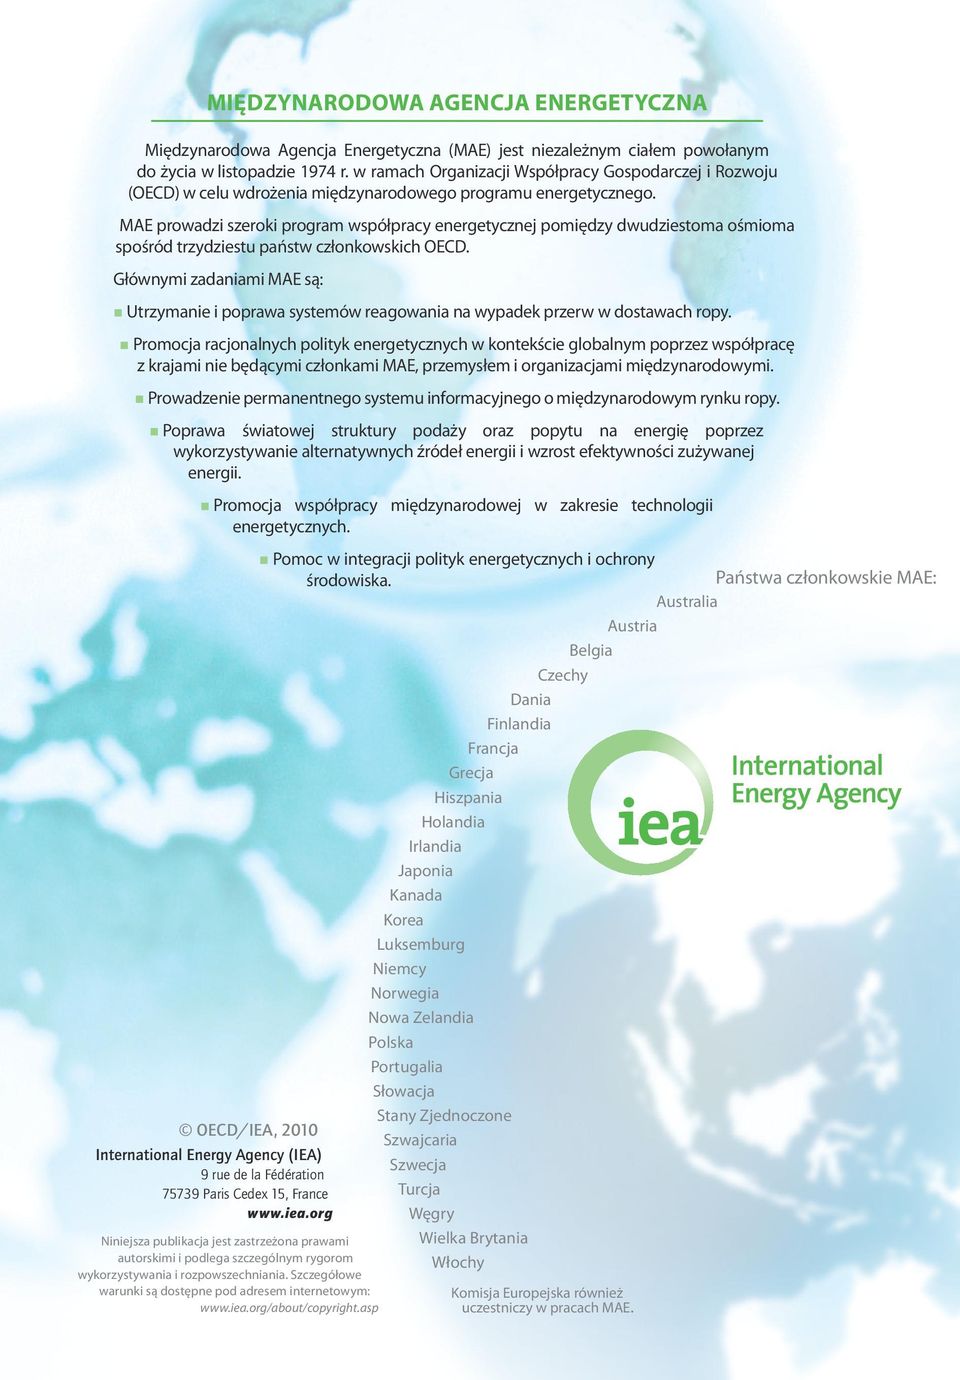 MAE prowadzi szeroki program współpracy energetycznej pomiędzy dwudziestoma ośmioma spośród trzydziestu państw członkowskich OECD.